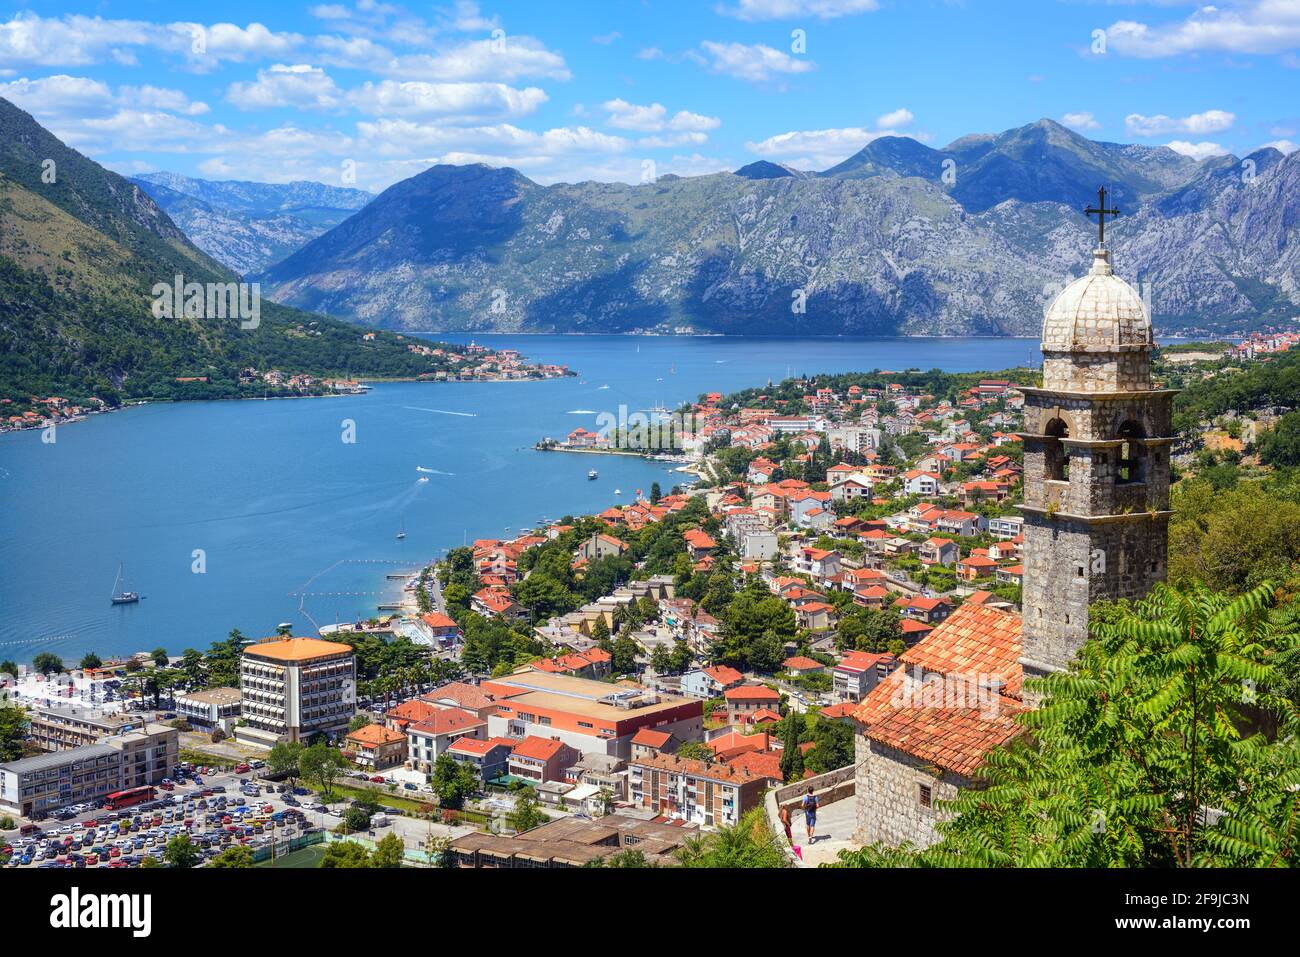 Vieille ville historique de Kotor et baie de Kotor de la mer Adriatique, montagnes des Balkans, Monténégro Banque D'Images